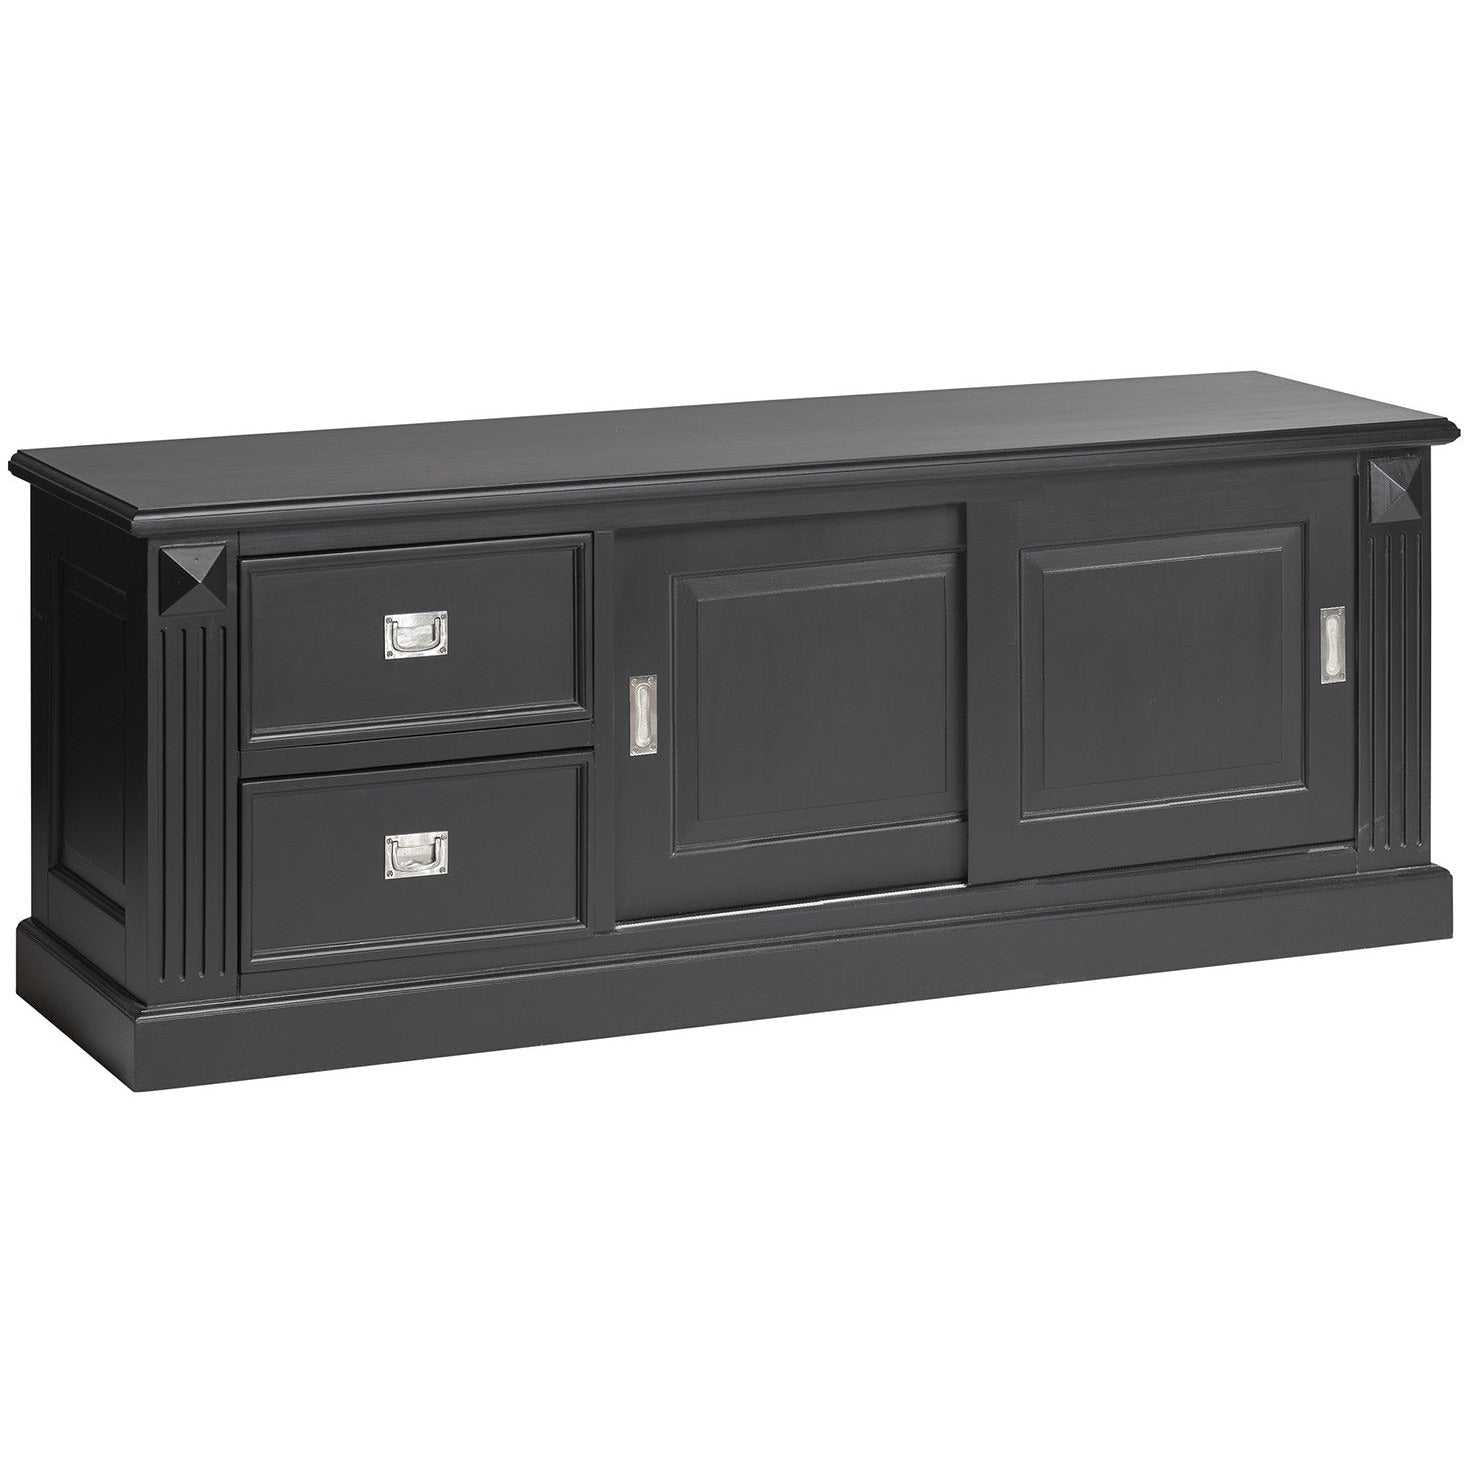 TV-meubel Feline 160 cm - hout - zwart / grijs - Actieprijs: